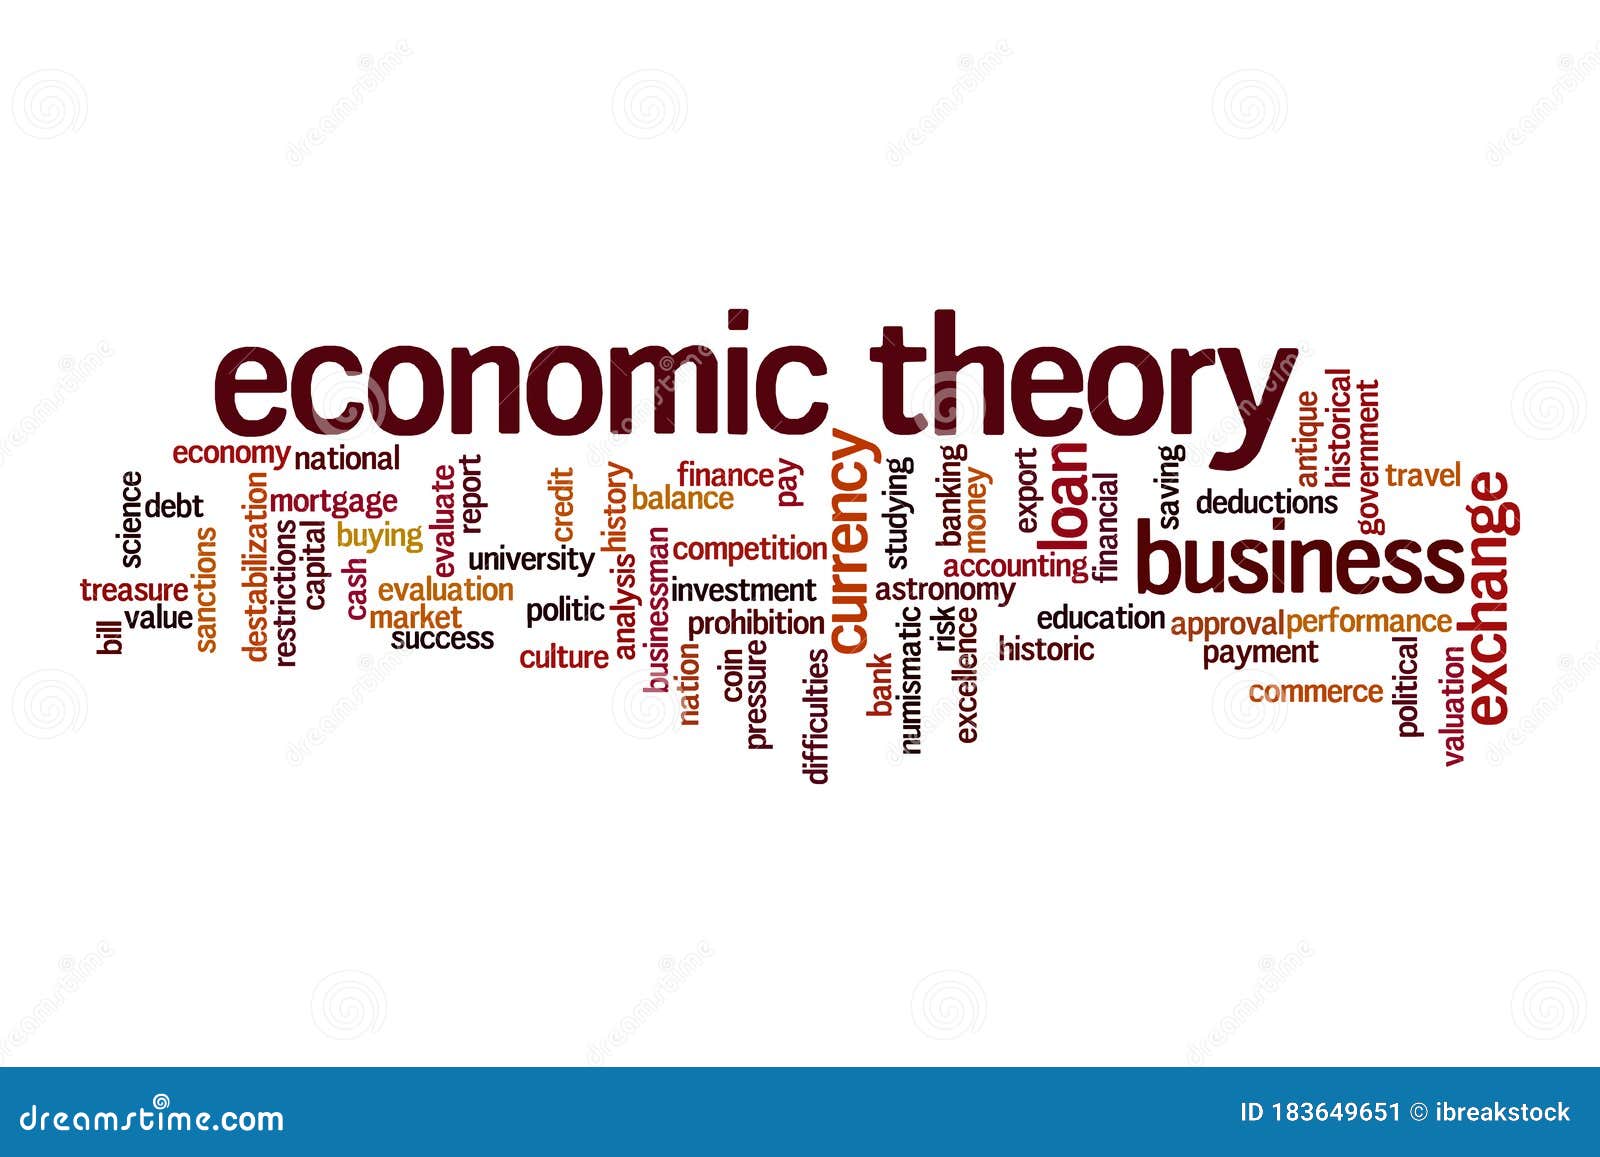 Economic theory of Economics